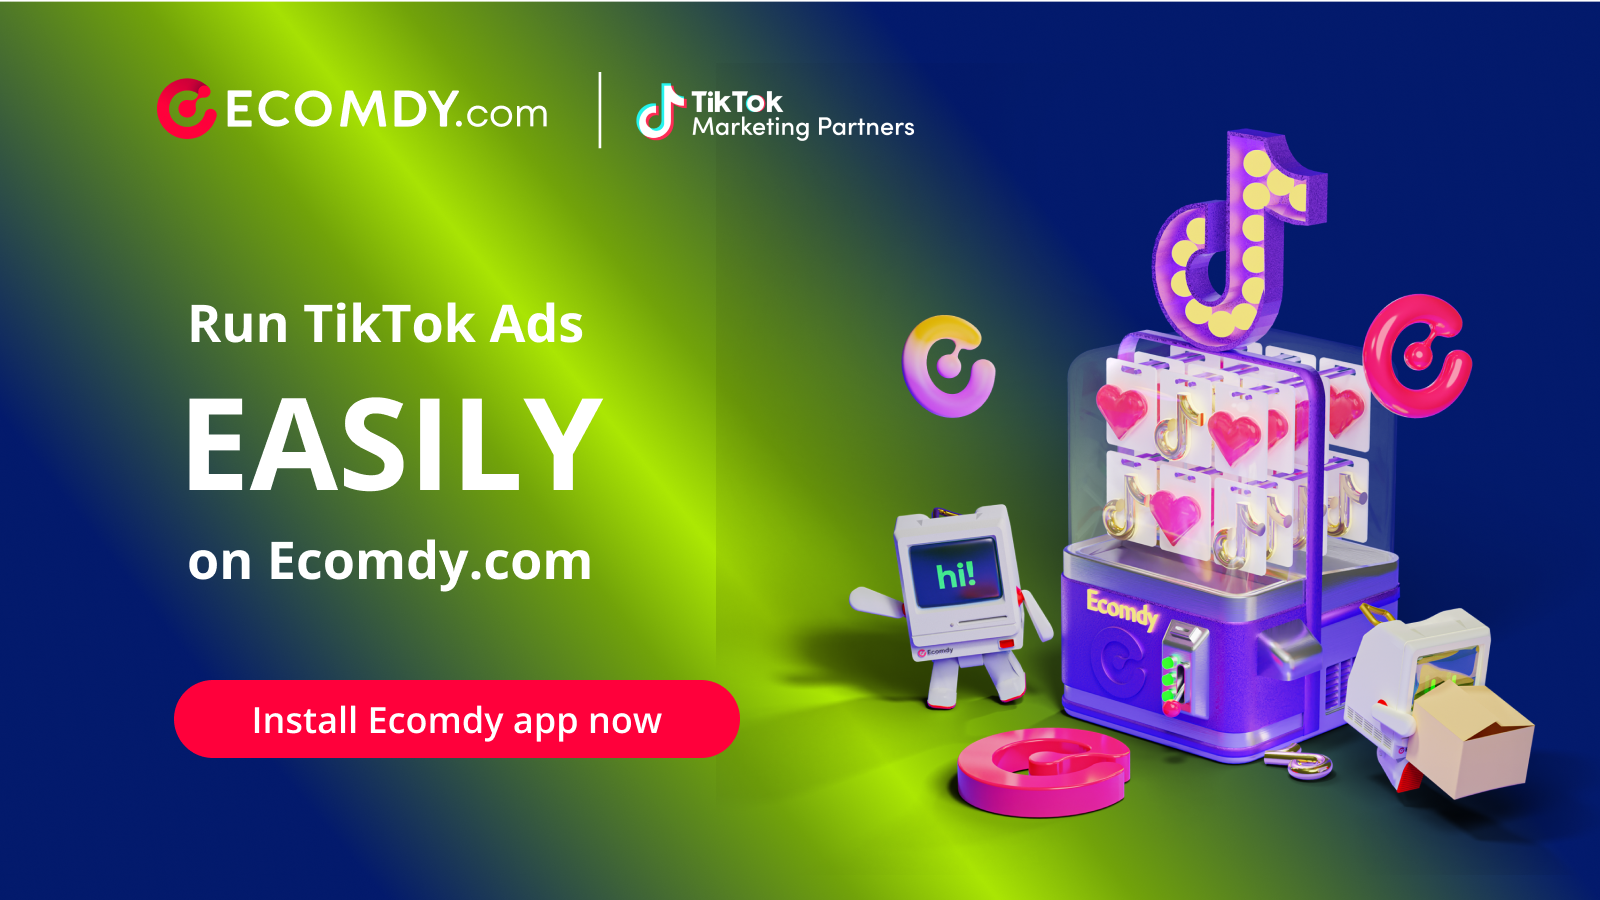 Lancez des publicités TikTok directement sur Ecomdy.com